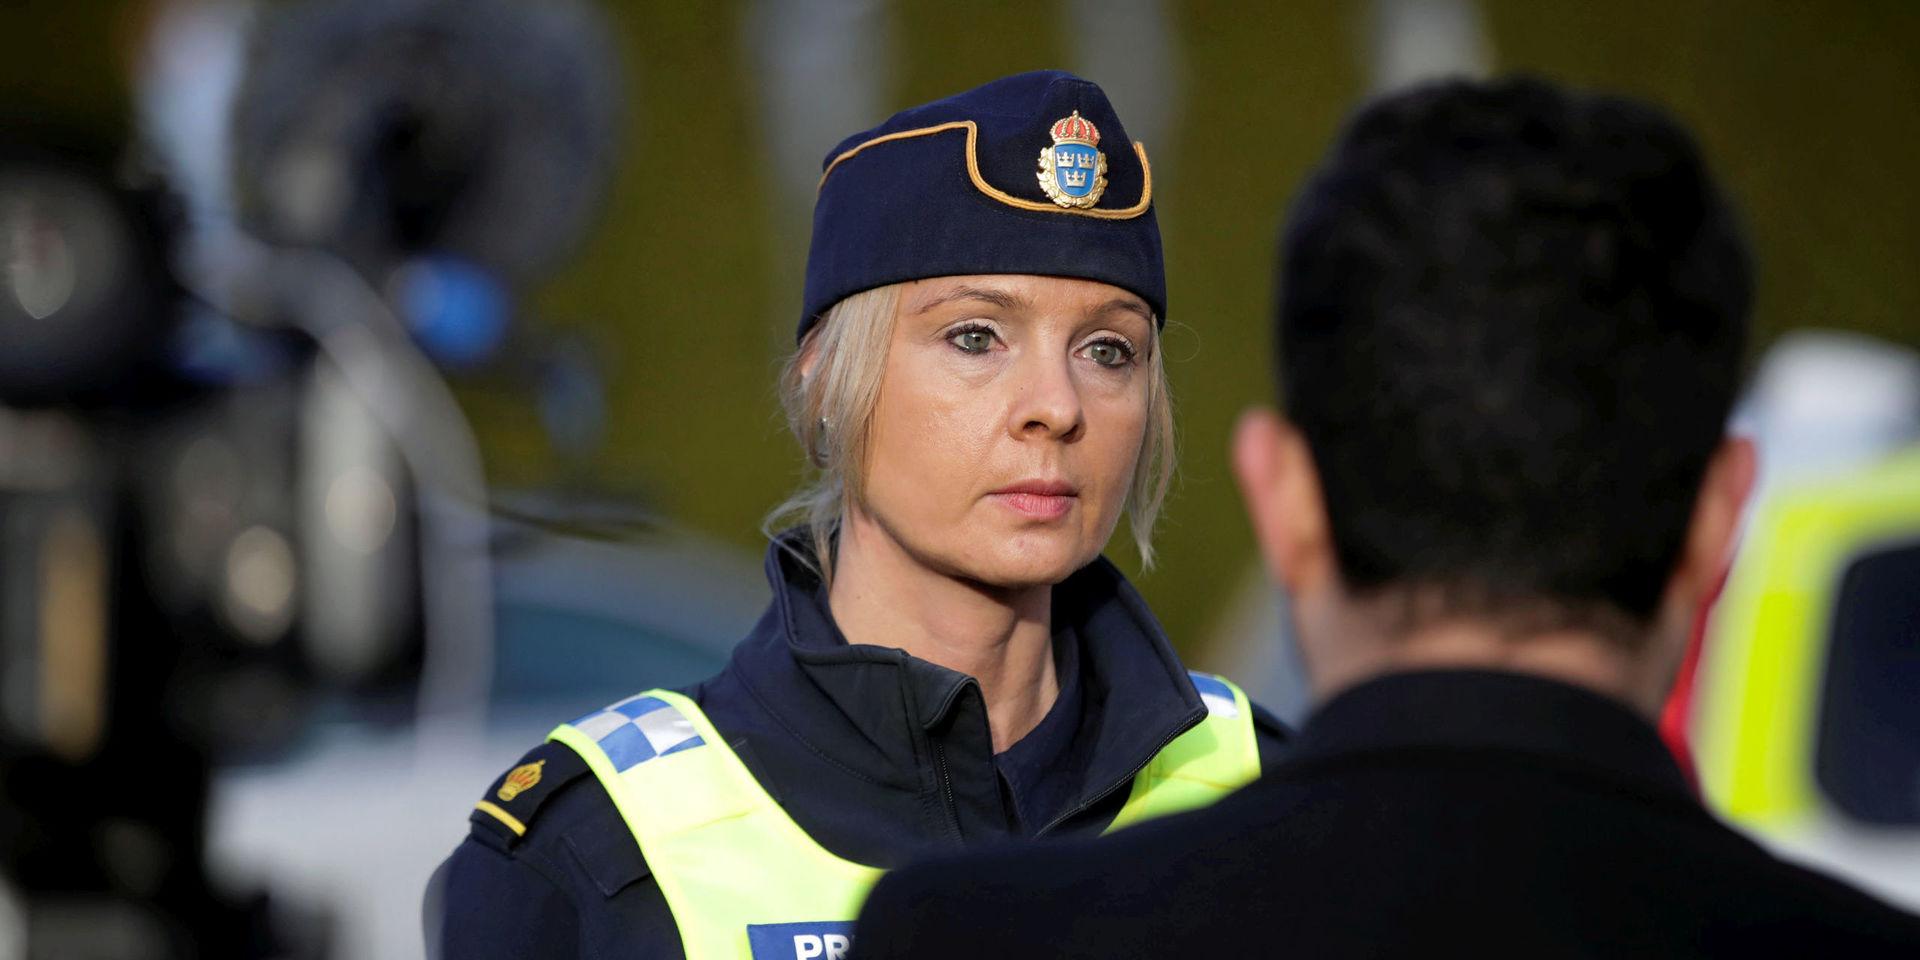 Polisens presstalesperson i region Väst, Anna Göransson, menar att det höga antalet omhändertagit körkort kan bero på flera saker.